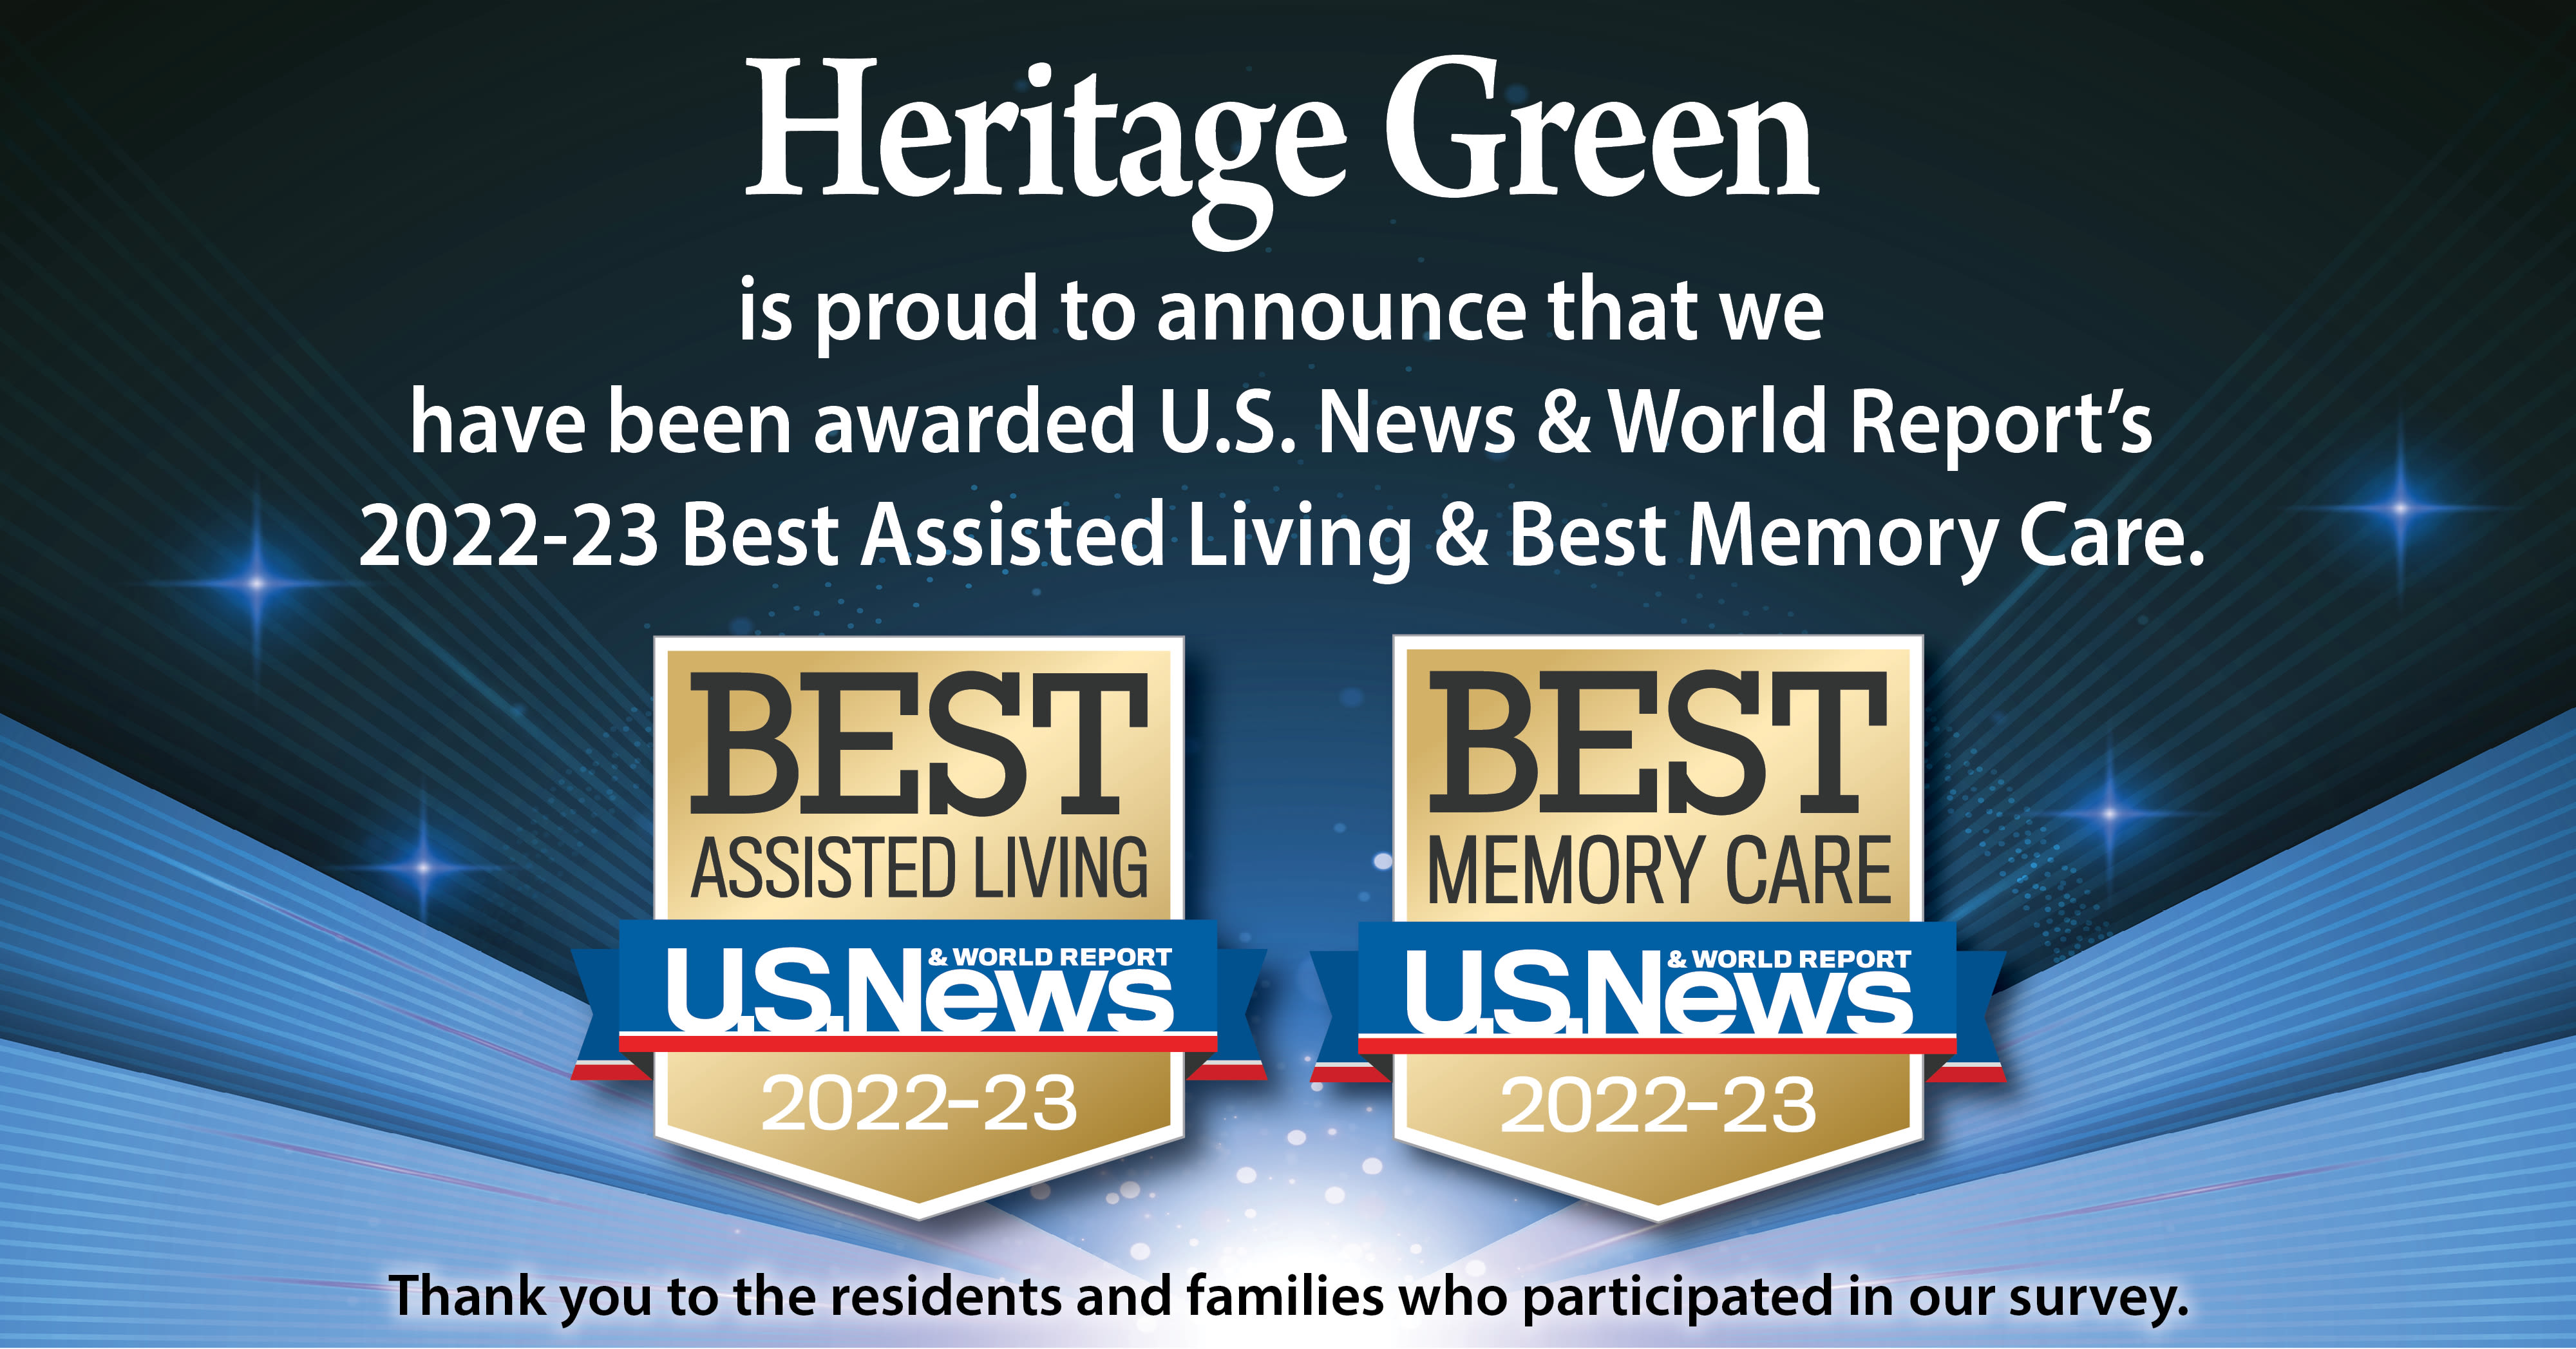 US News Best Senior Living Award 2022 for Heritage Green